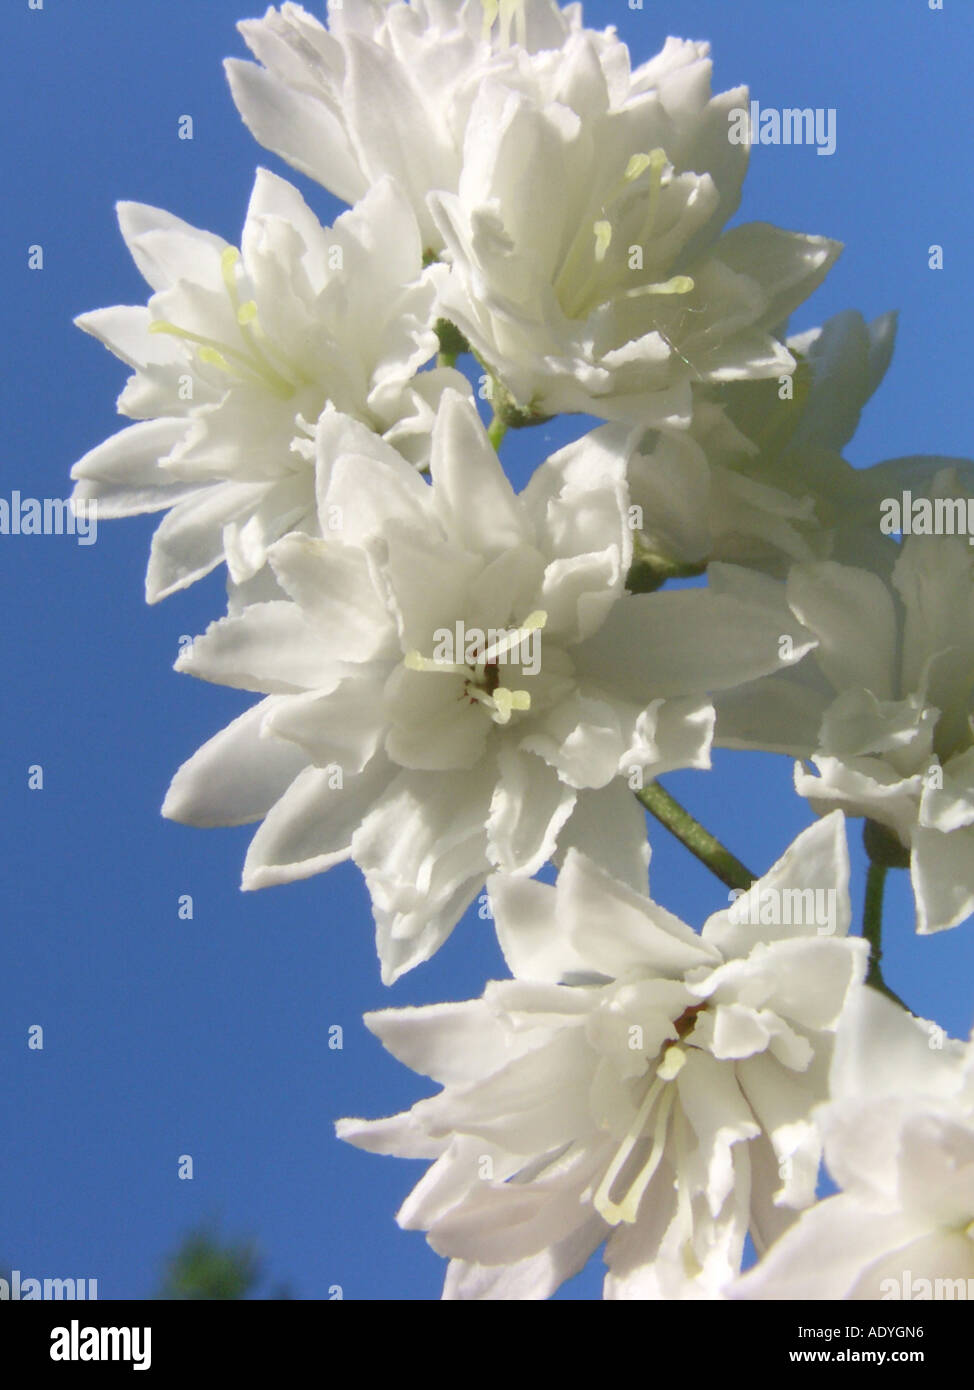 deutzia (Deutzia scabra), flowers against blu sky Stock Photo